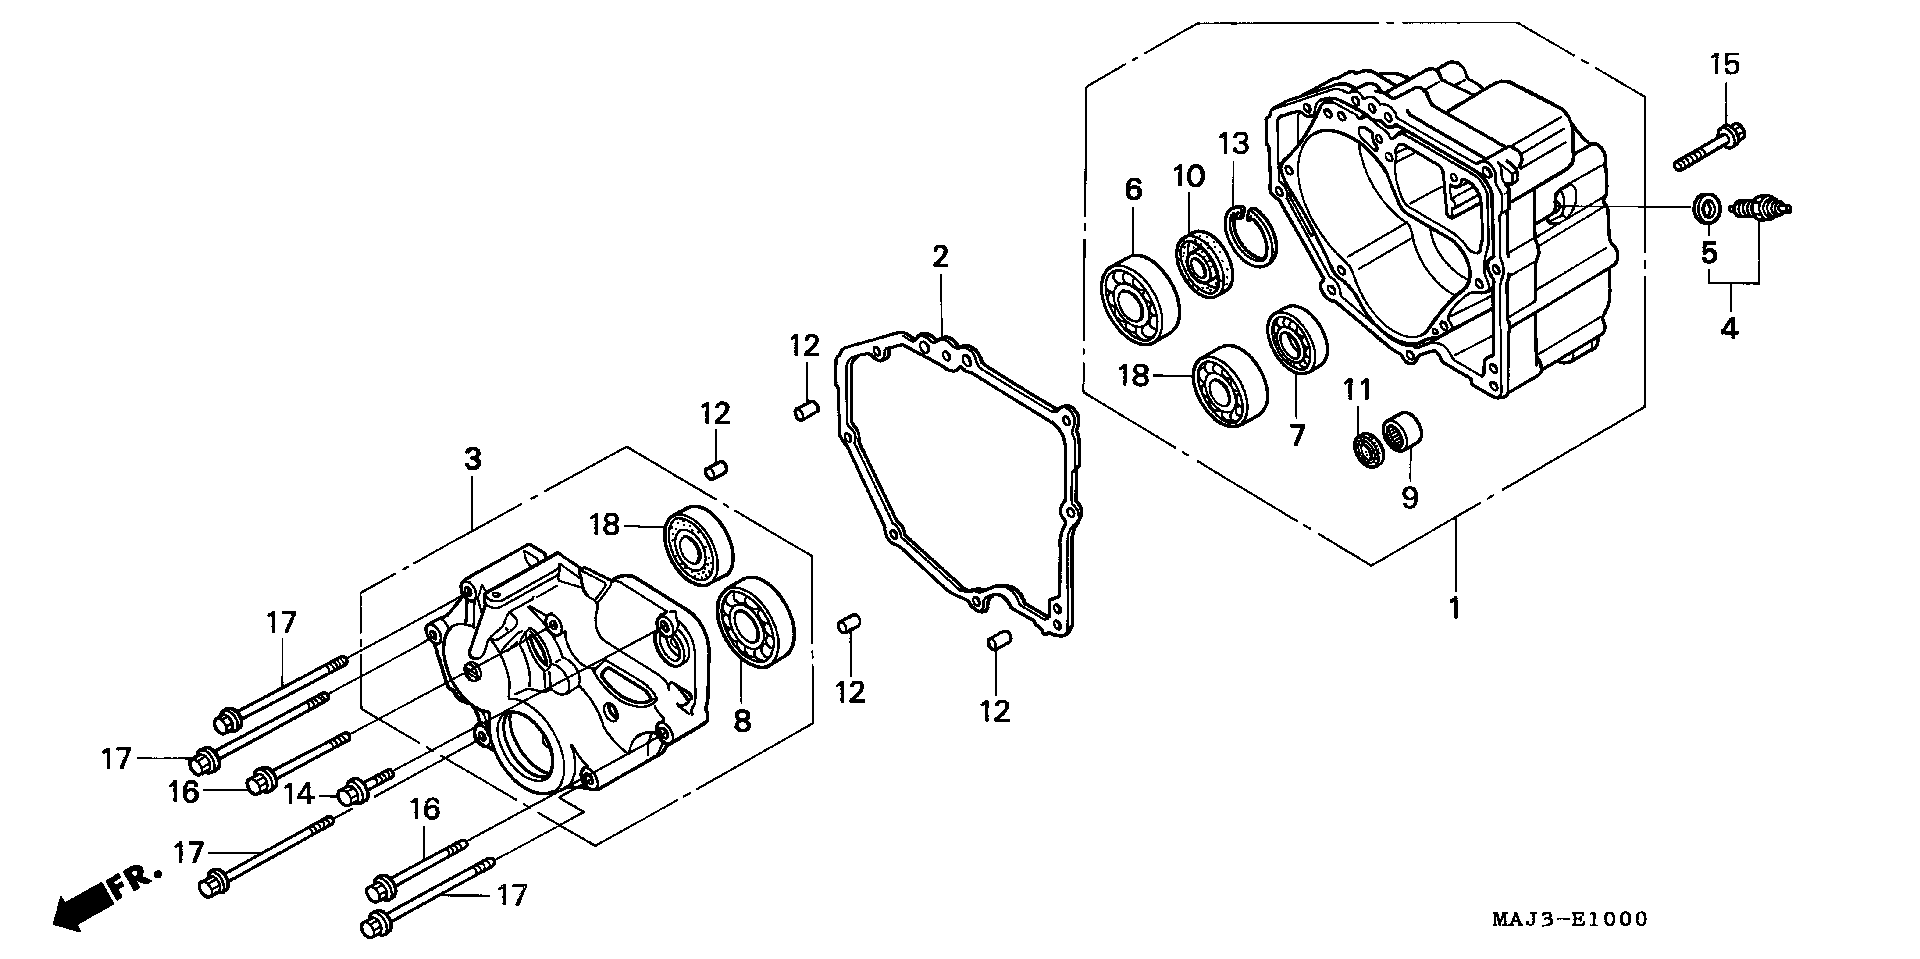 Parts fiche Rear Case ST1100